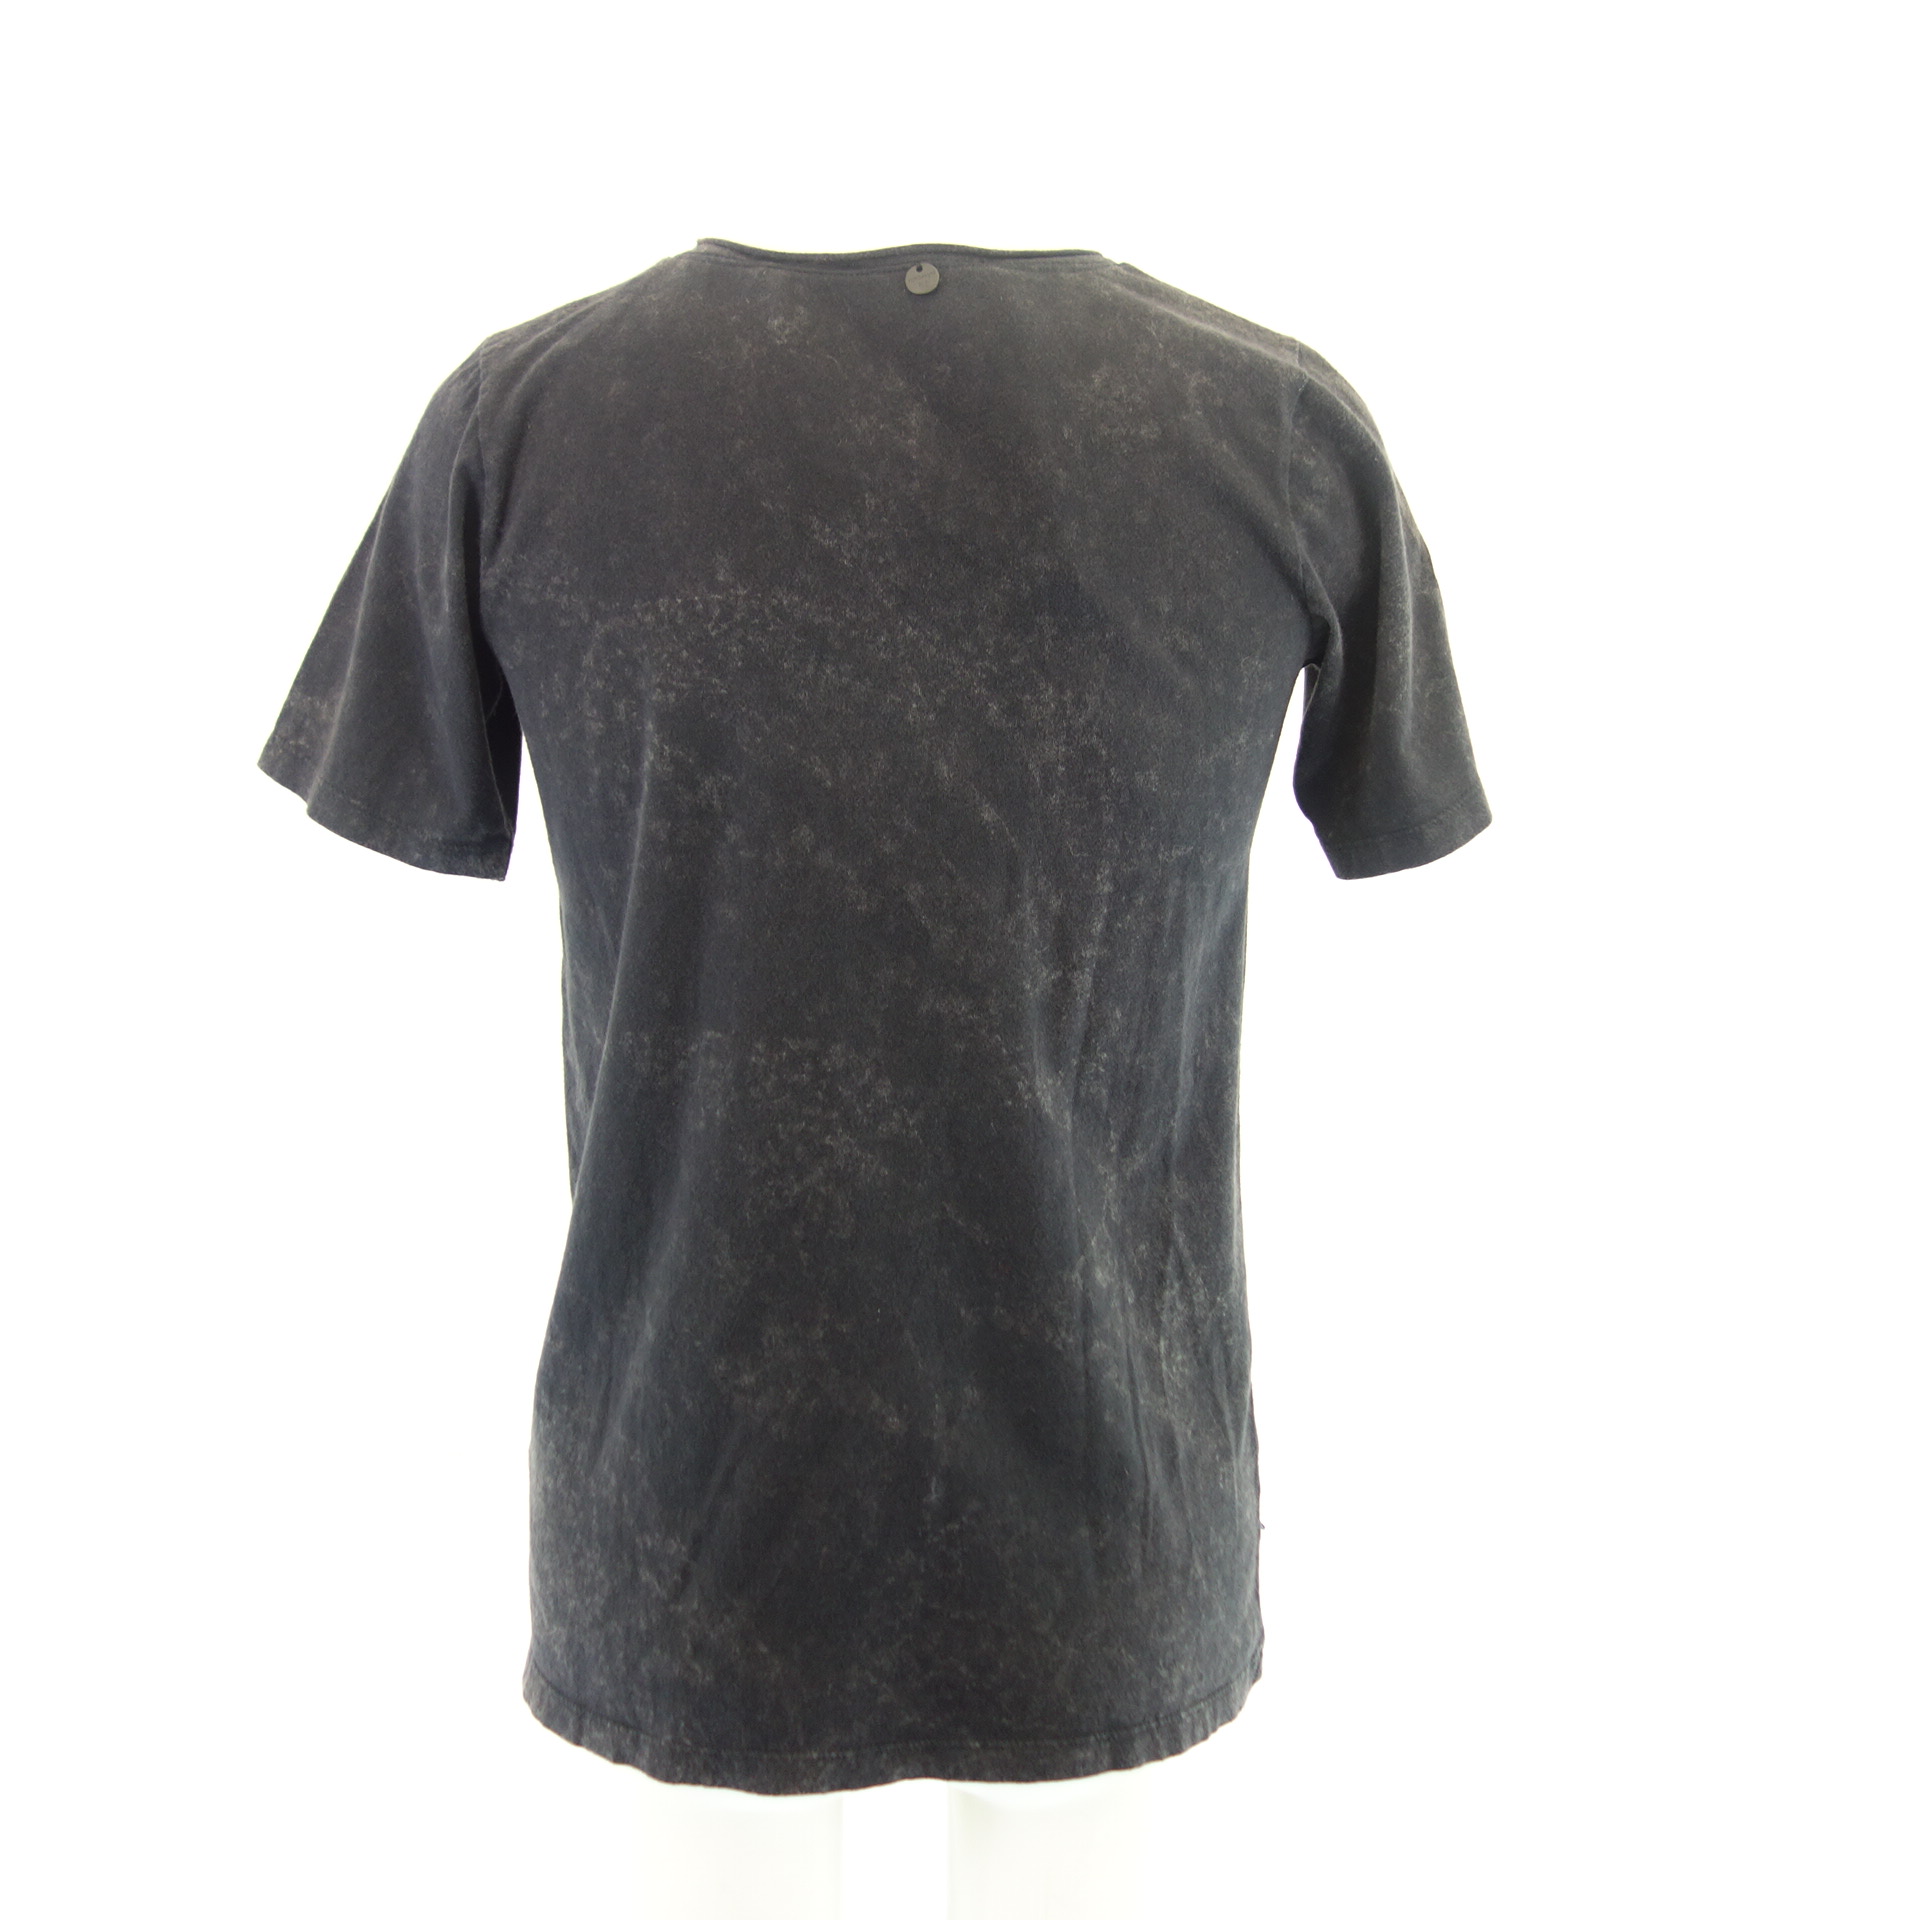 RICH & ROYAL Damen T-Shirt T Shirt Oberteil Schwarz Pailletten Gr XS 100% Baumwolle